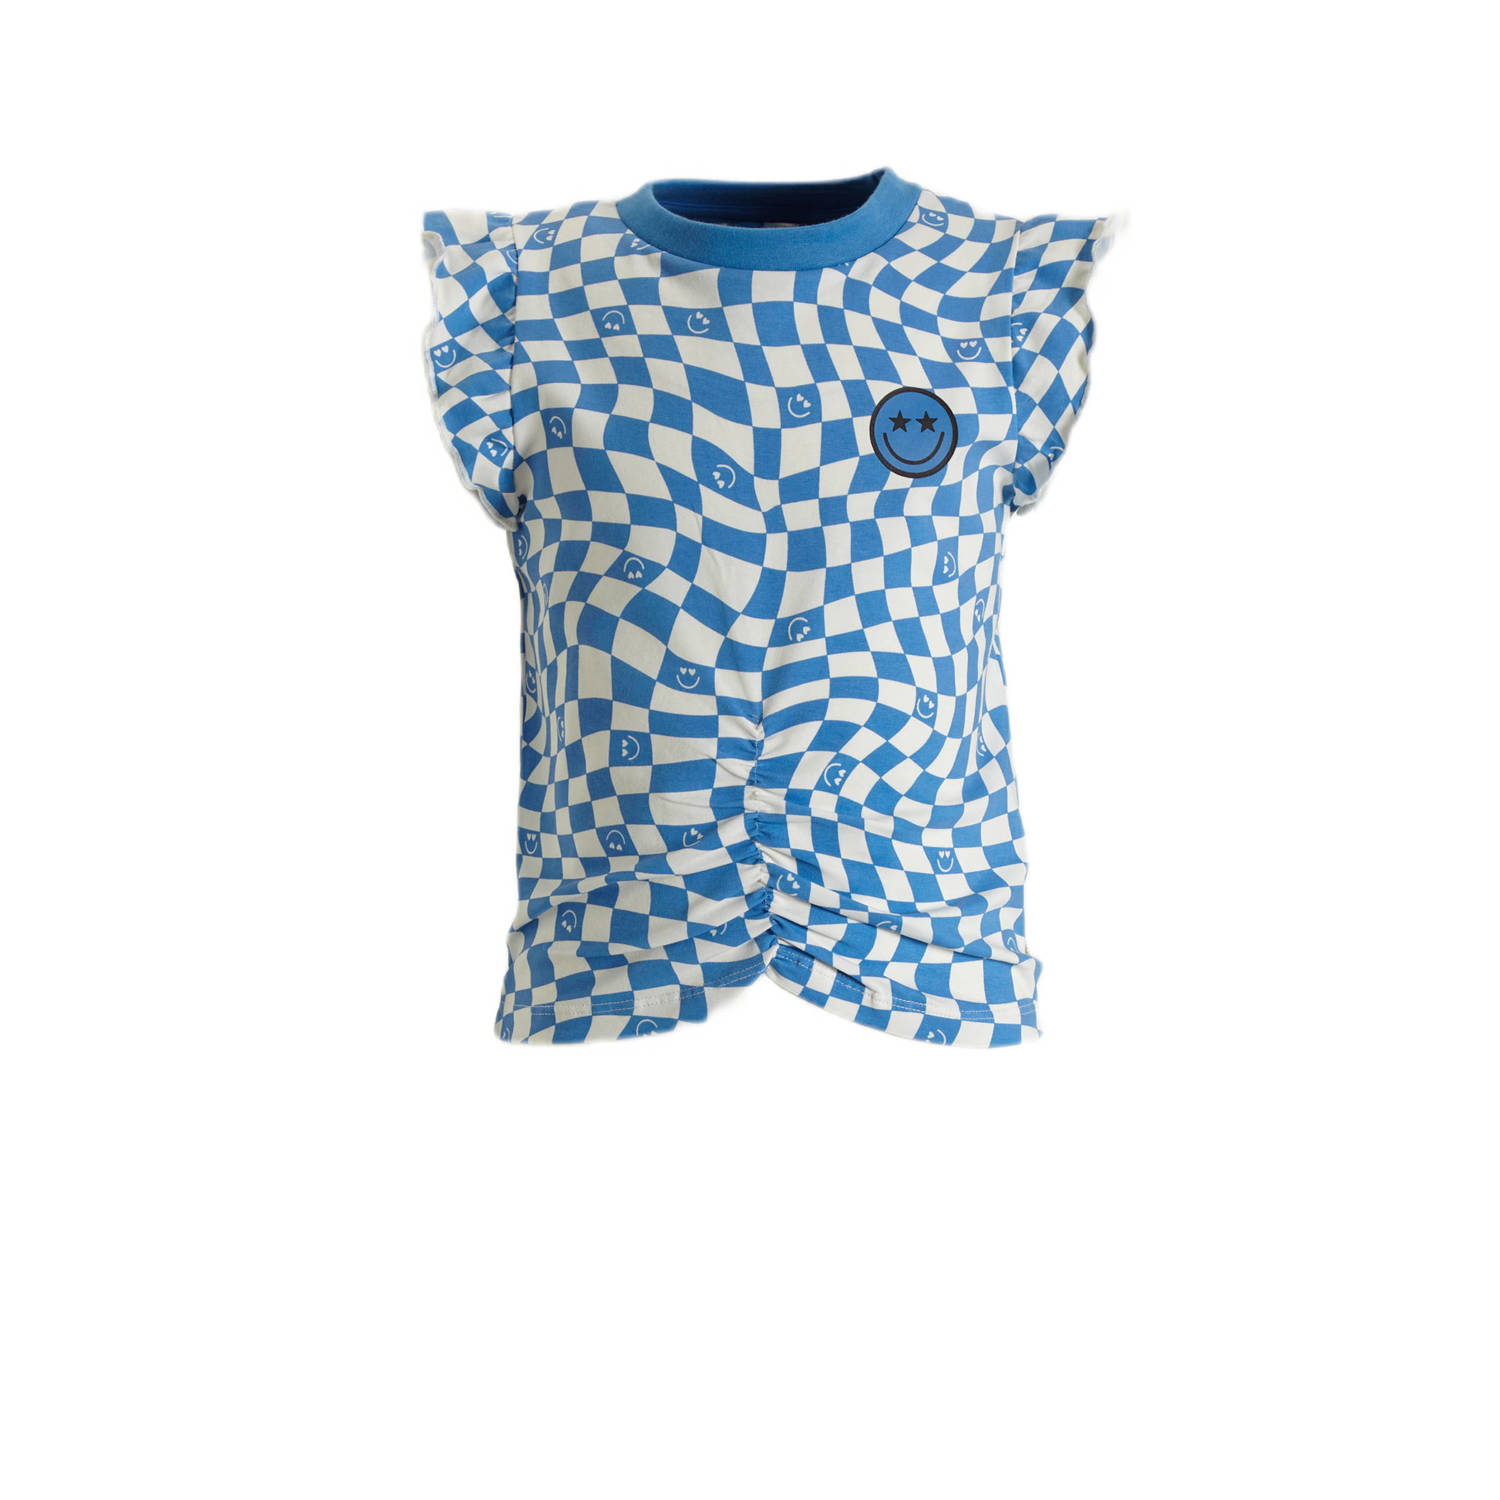 Orange Stars T-shirt Pelin met all over print blauw wit Meisjes Katoen Ronde hals 122 128